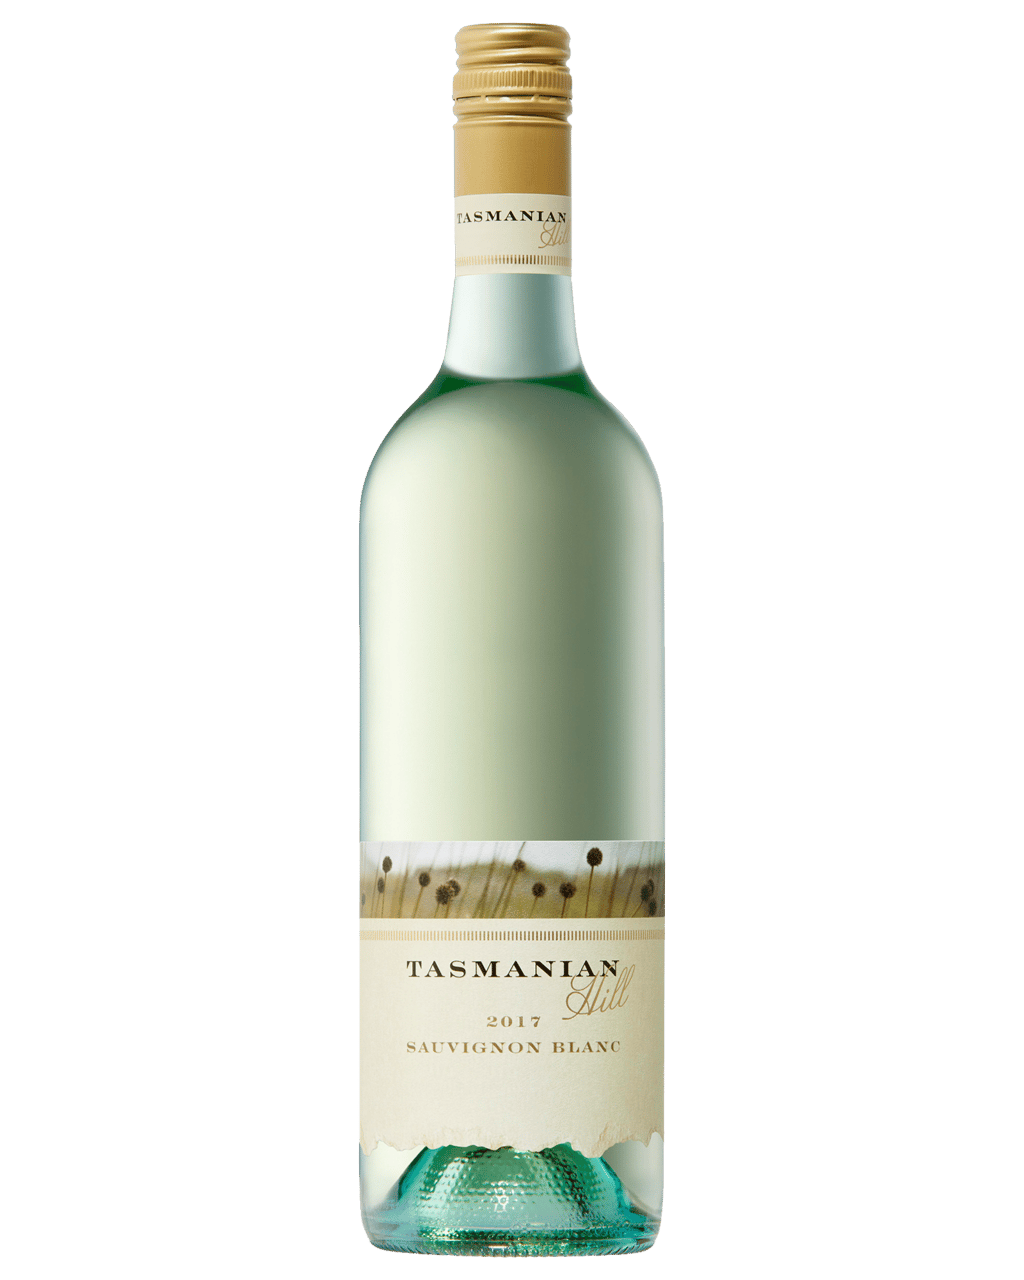 wine review william hill sauvignon blanc